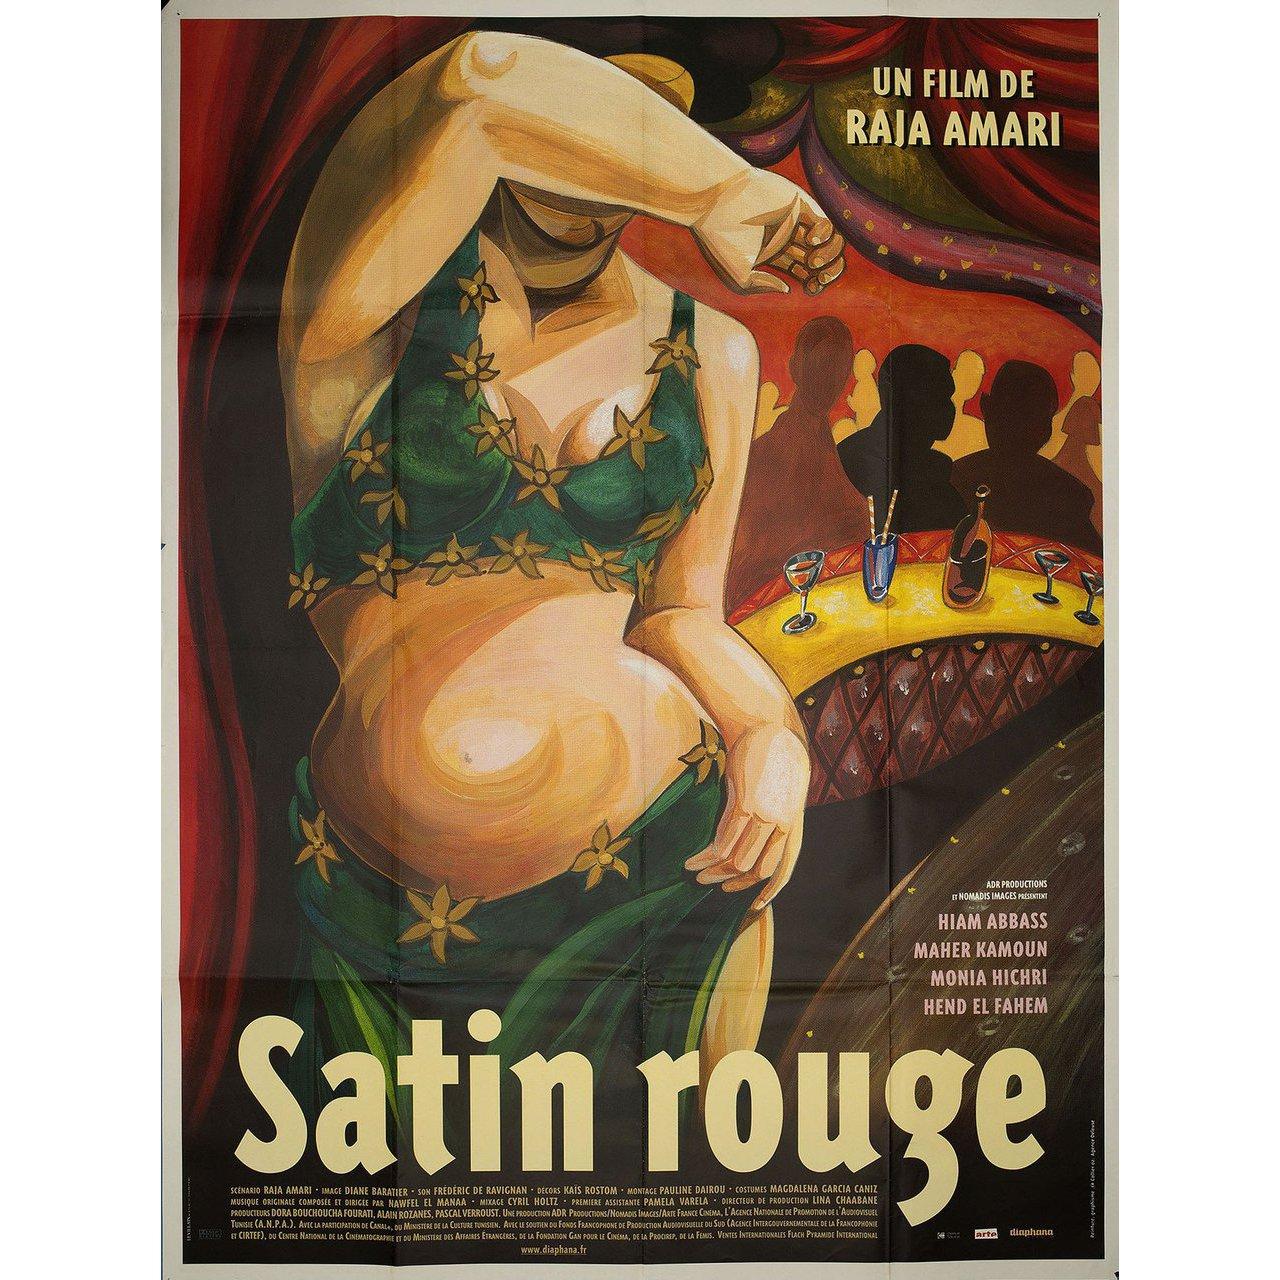 Grande affiche française originale de 2002 pour le film Satin Rouge (Red Satin) réalisé par Raja Amari avec Hiam Abbass / Hend El Fahem / Maher Kamoun / Monia Hichri. Très bon état, plié. De nombreuses affiches originales ont été publiées pliées ou